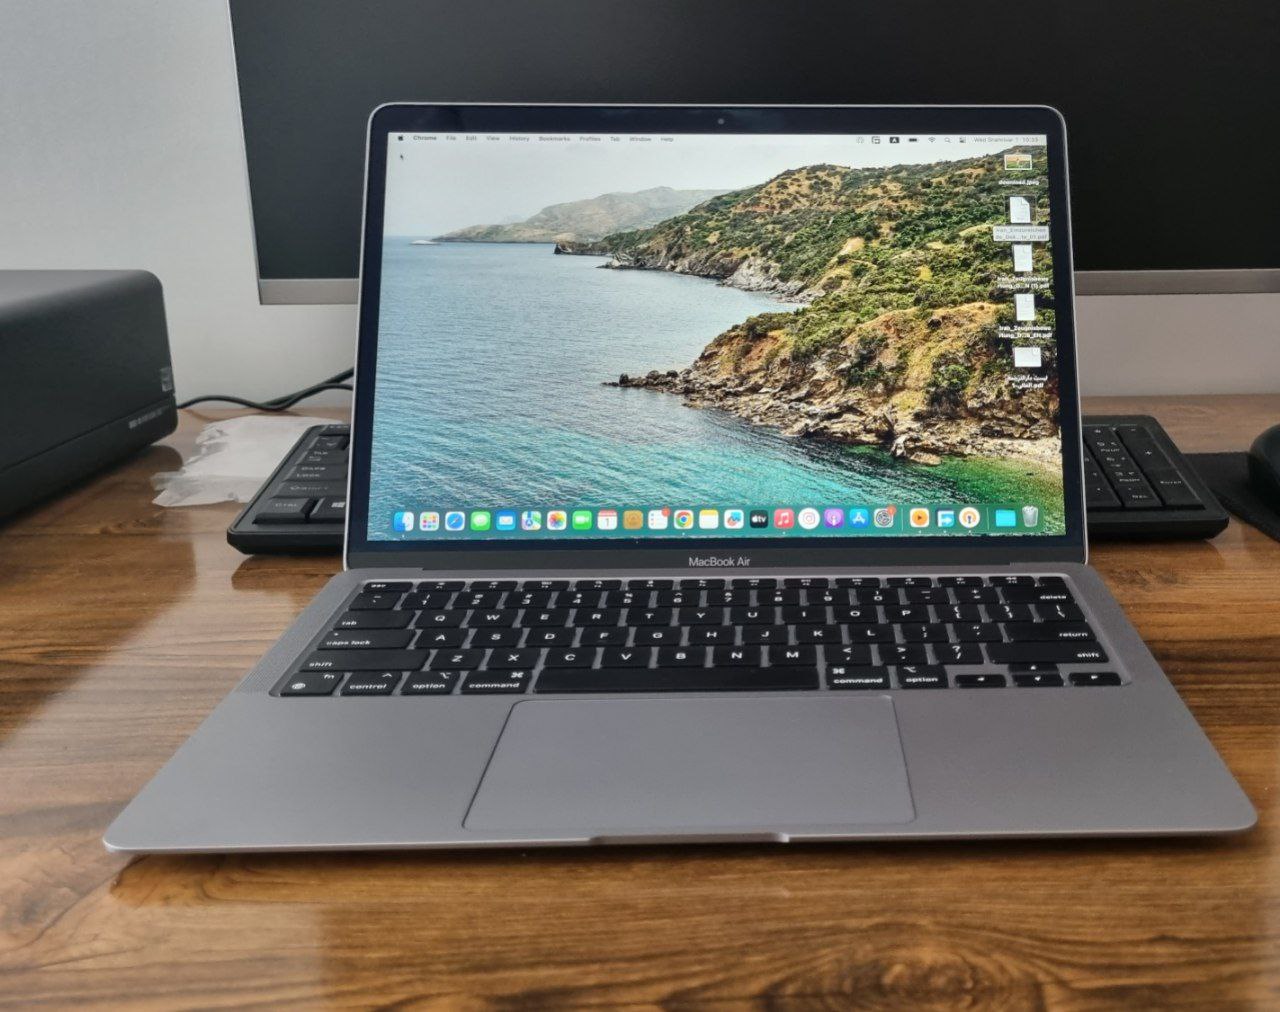 لپ تاپ اپل مک بوک ایر 13 اینچی Apple MacBook Air 2020 M1 – MGN63 در حد نو -افراتیک